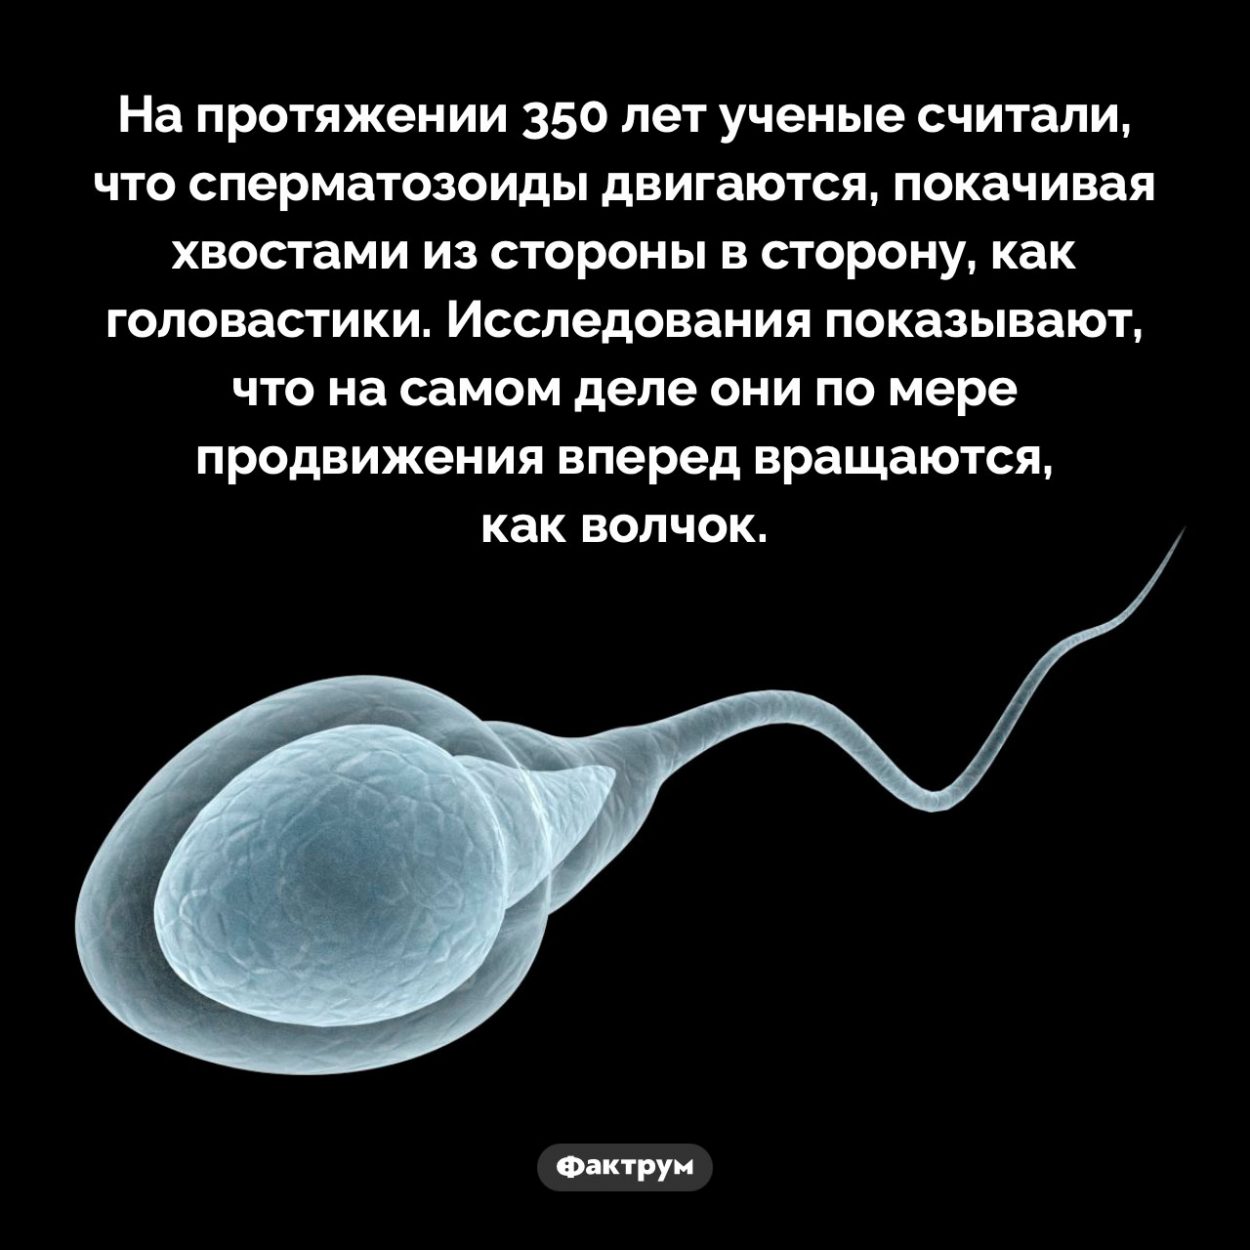 Ненормальный сперматозоид